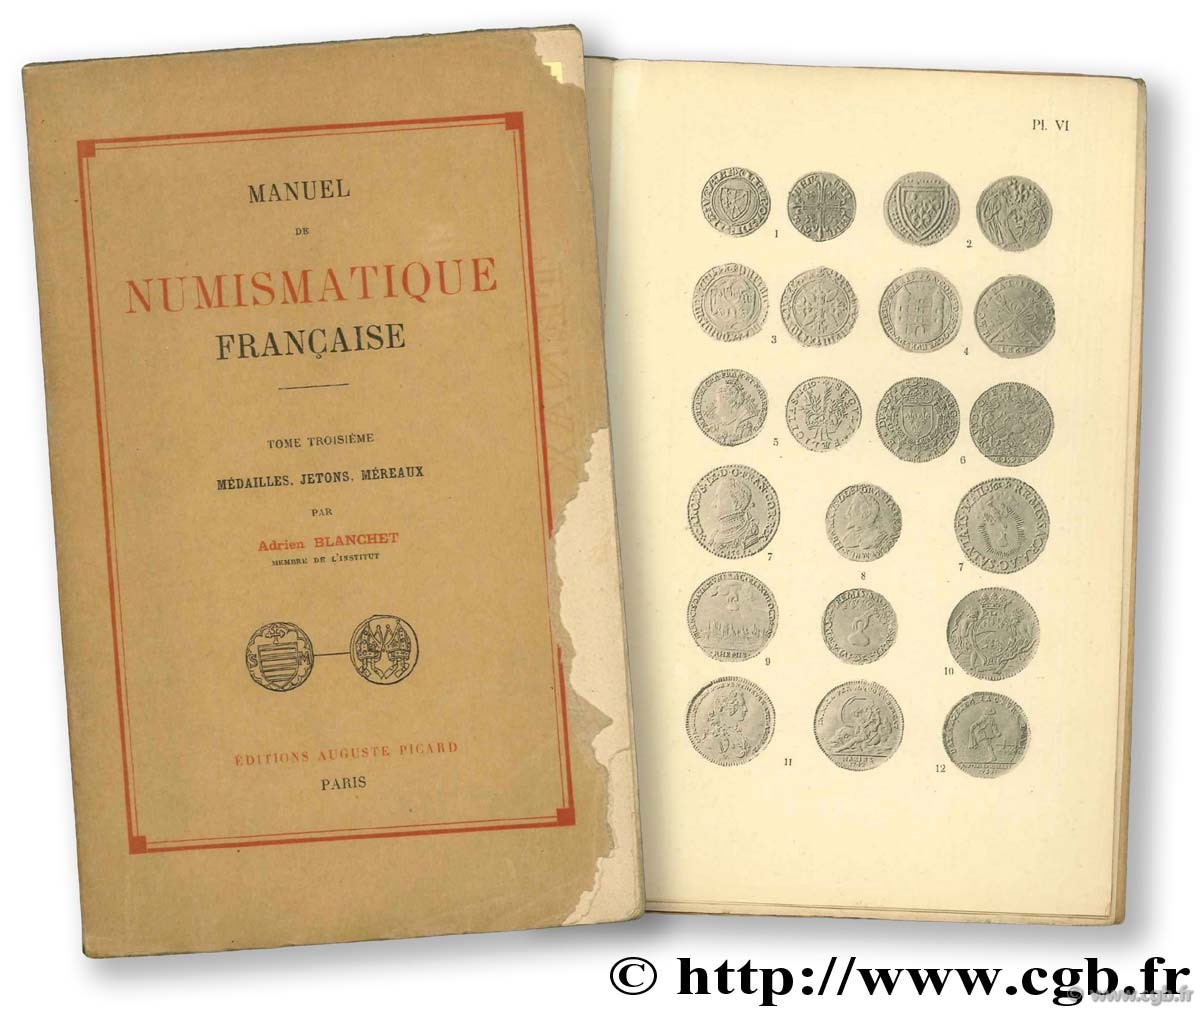 Manuel de numismatique française BLANCHET A., DIEUDONNÉ A.